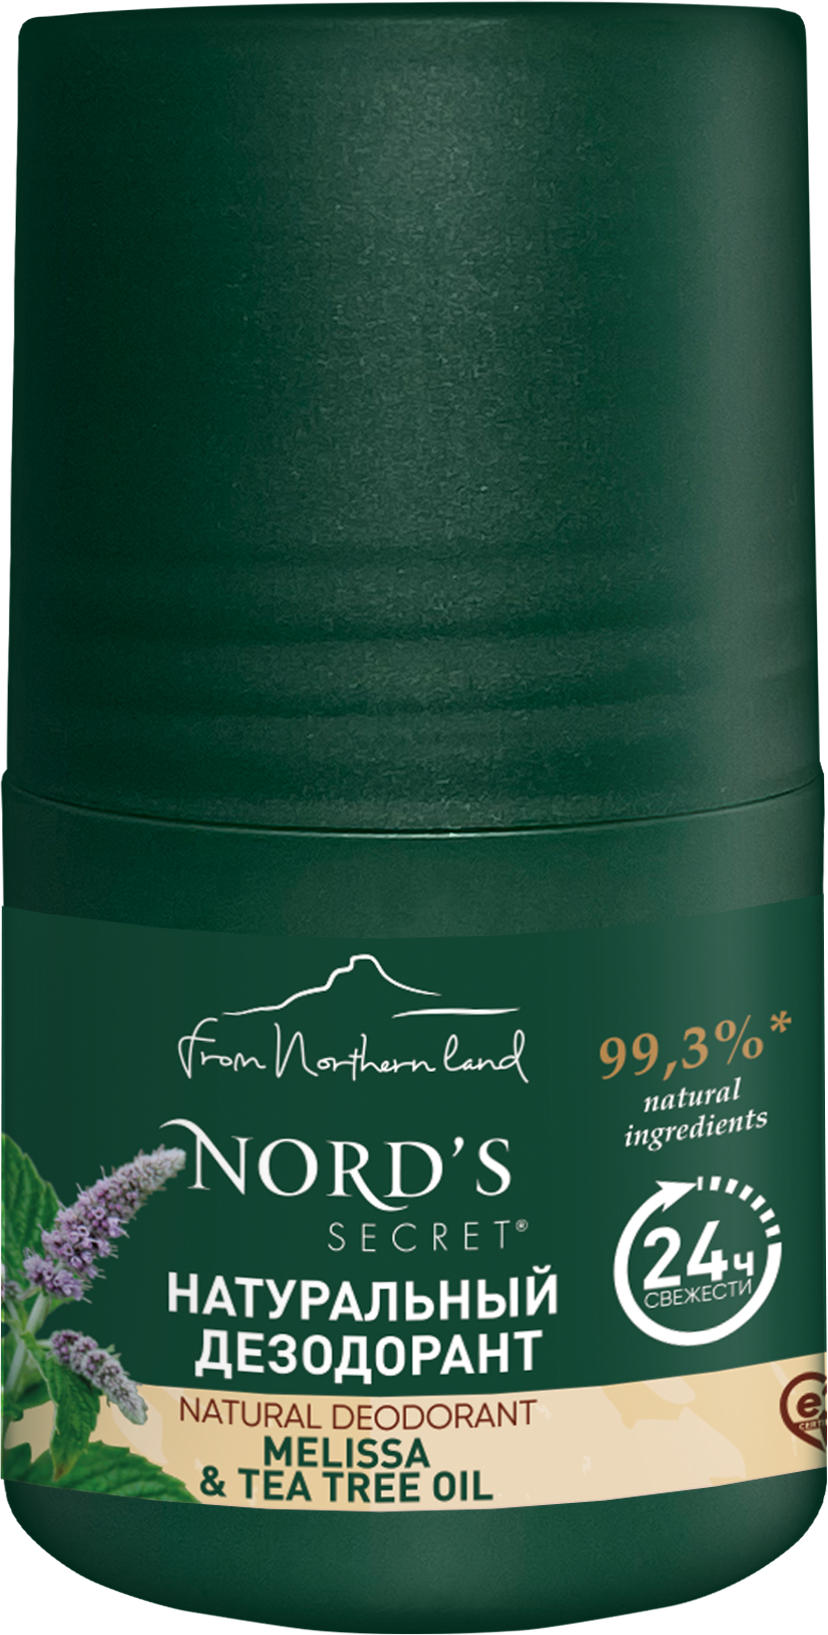 NORD'S SECRET Натуральный Дезодорант антиперспирант роликовый для женщин Мелисса и Масло Чайного Дерева, 50 мл/ Для деликатного ухода за кожей от пота и запаха.